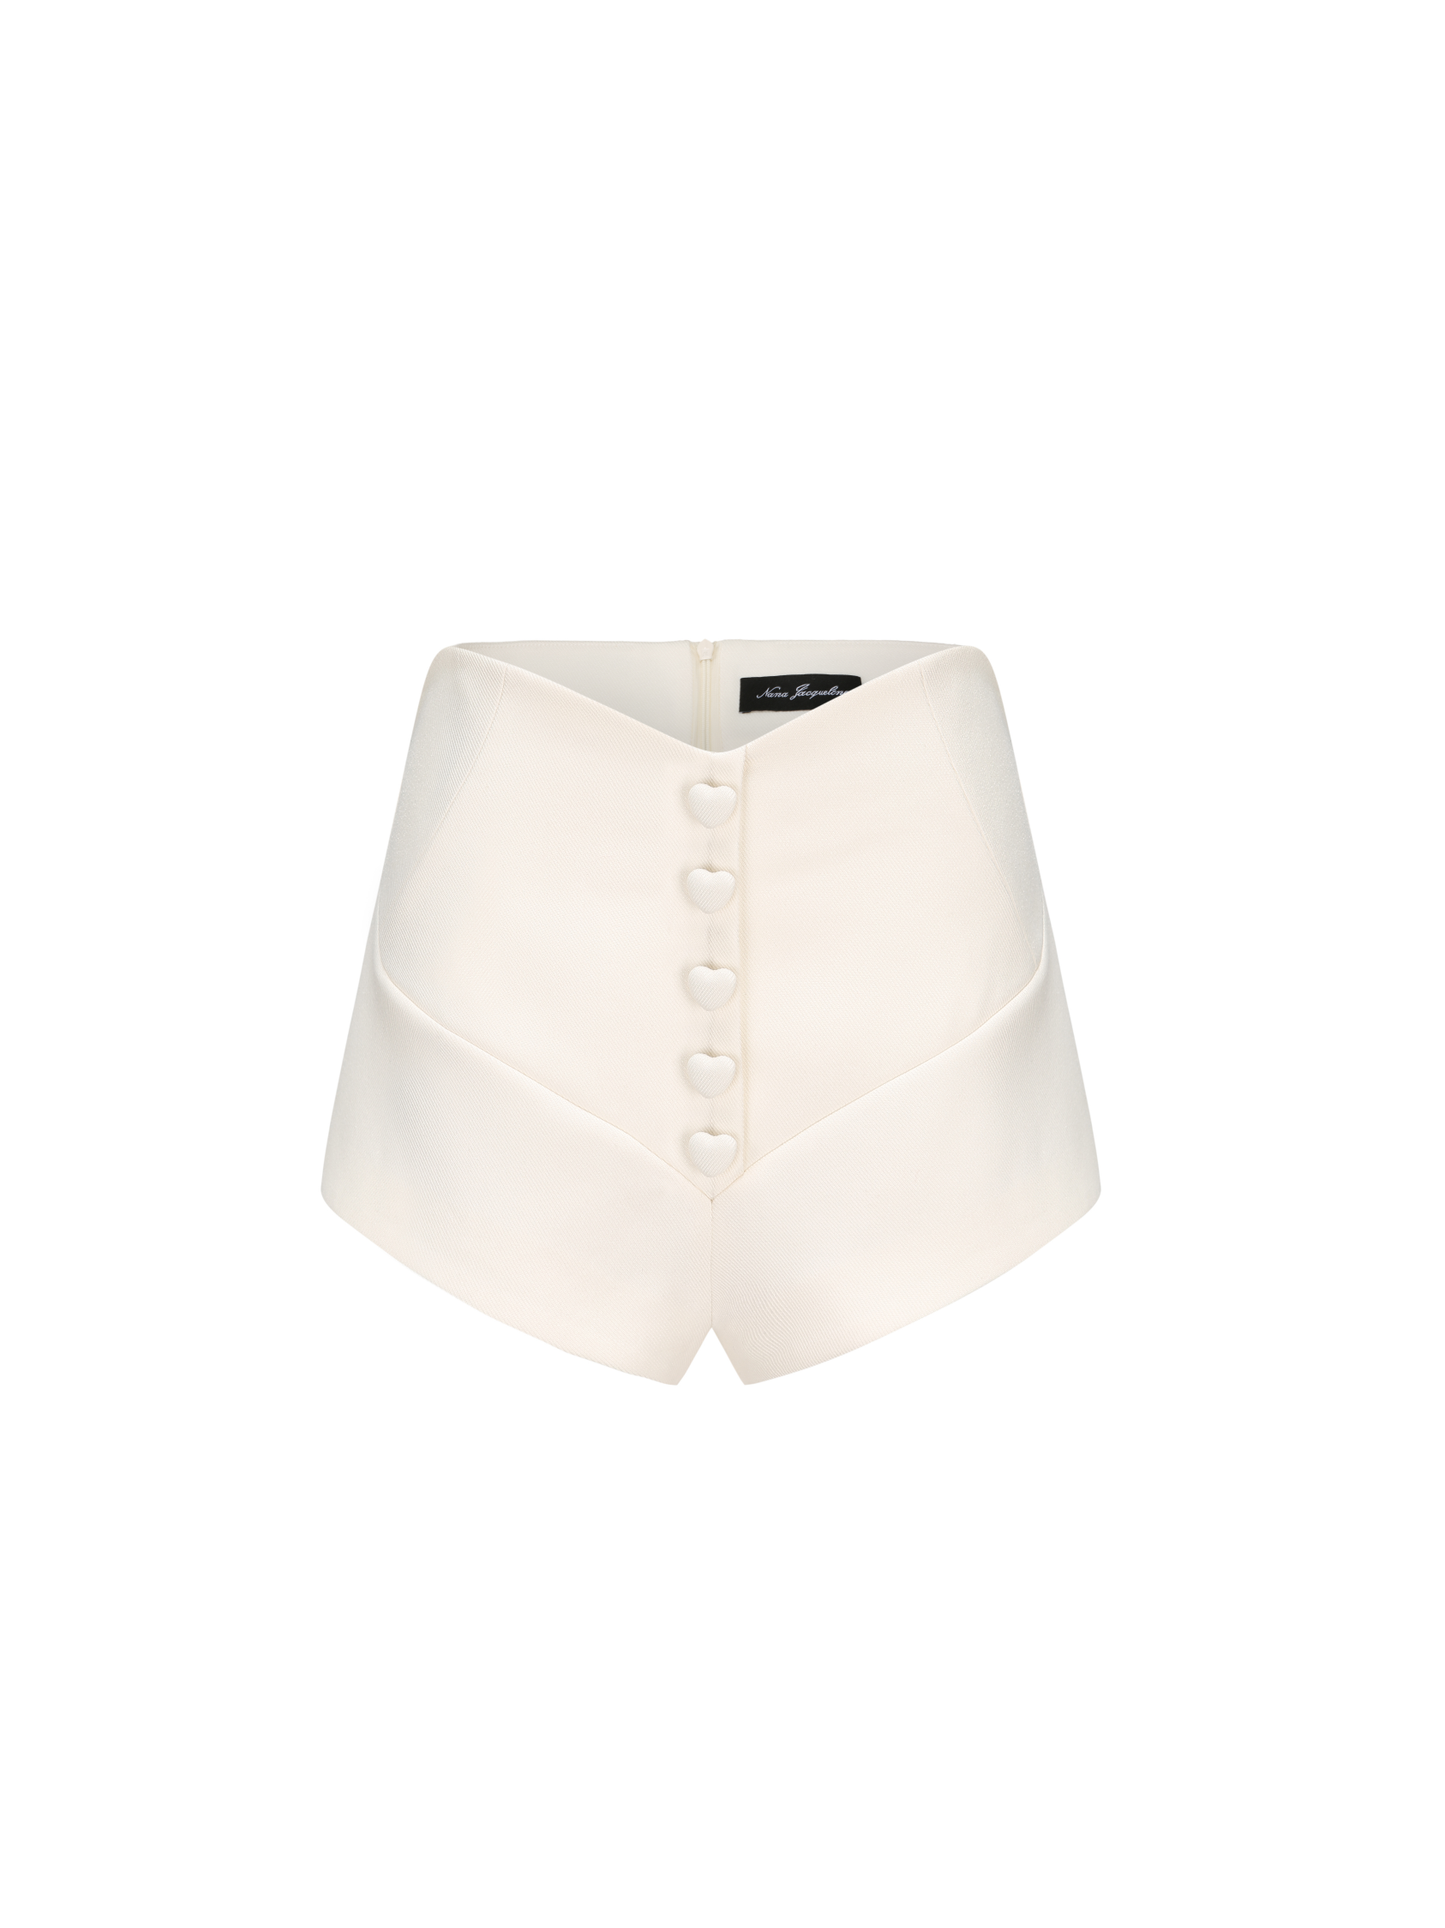 Annica Heart Shorts (White)